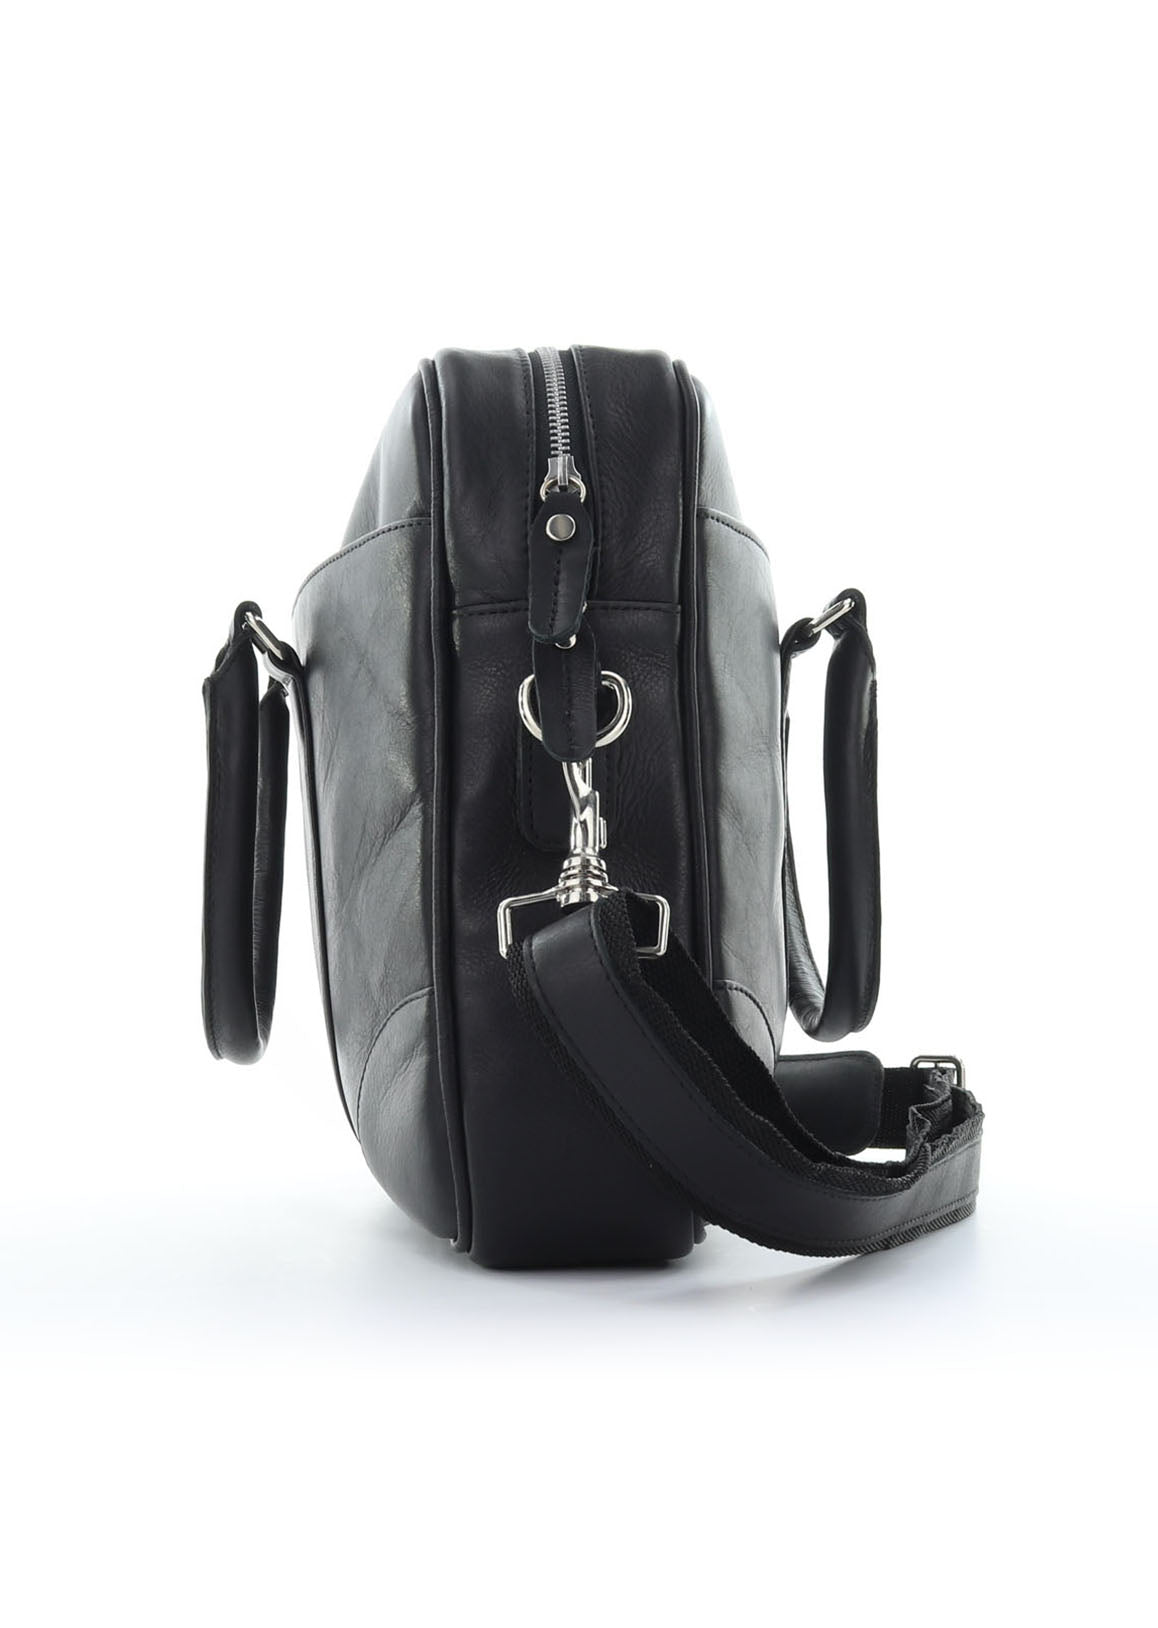 Black Hayden - messenger bag - leather bag - laptop bag - side view - Tom Voyager